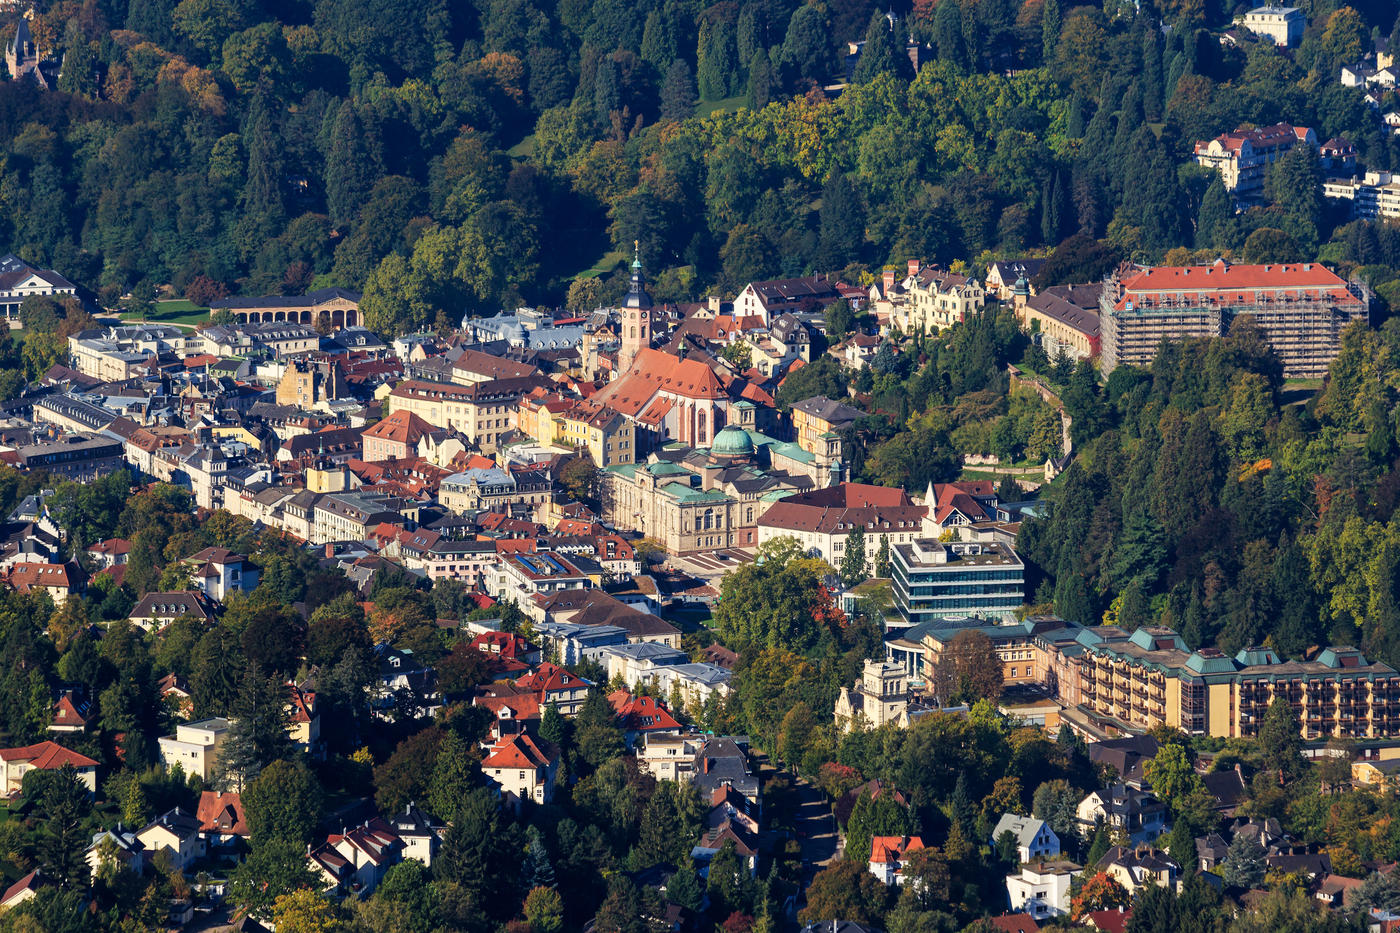 Baden-Baden: Immerse yourself in pure elegance